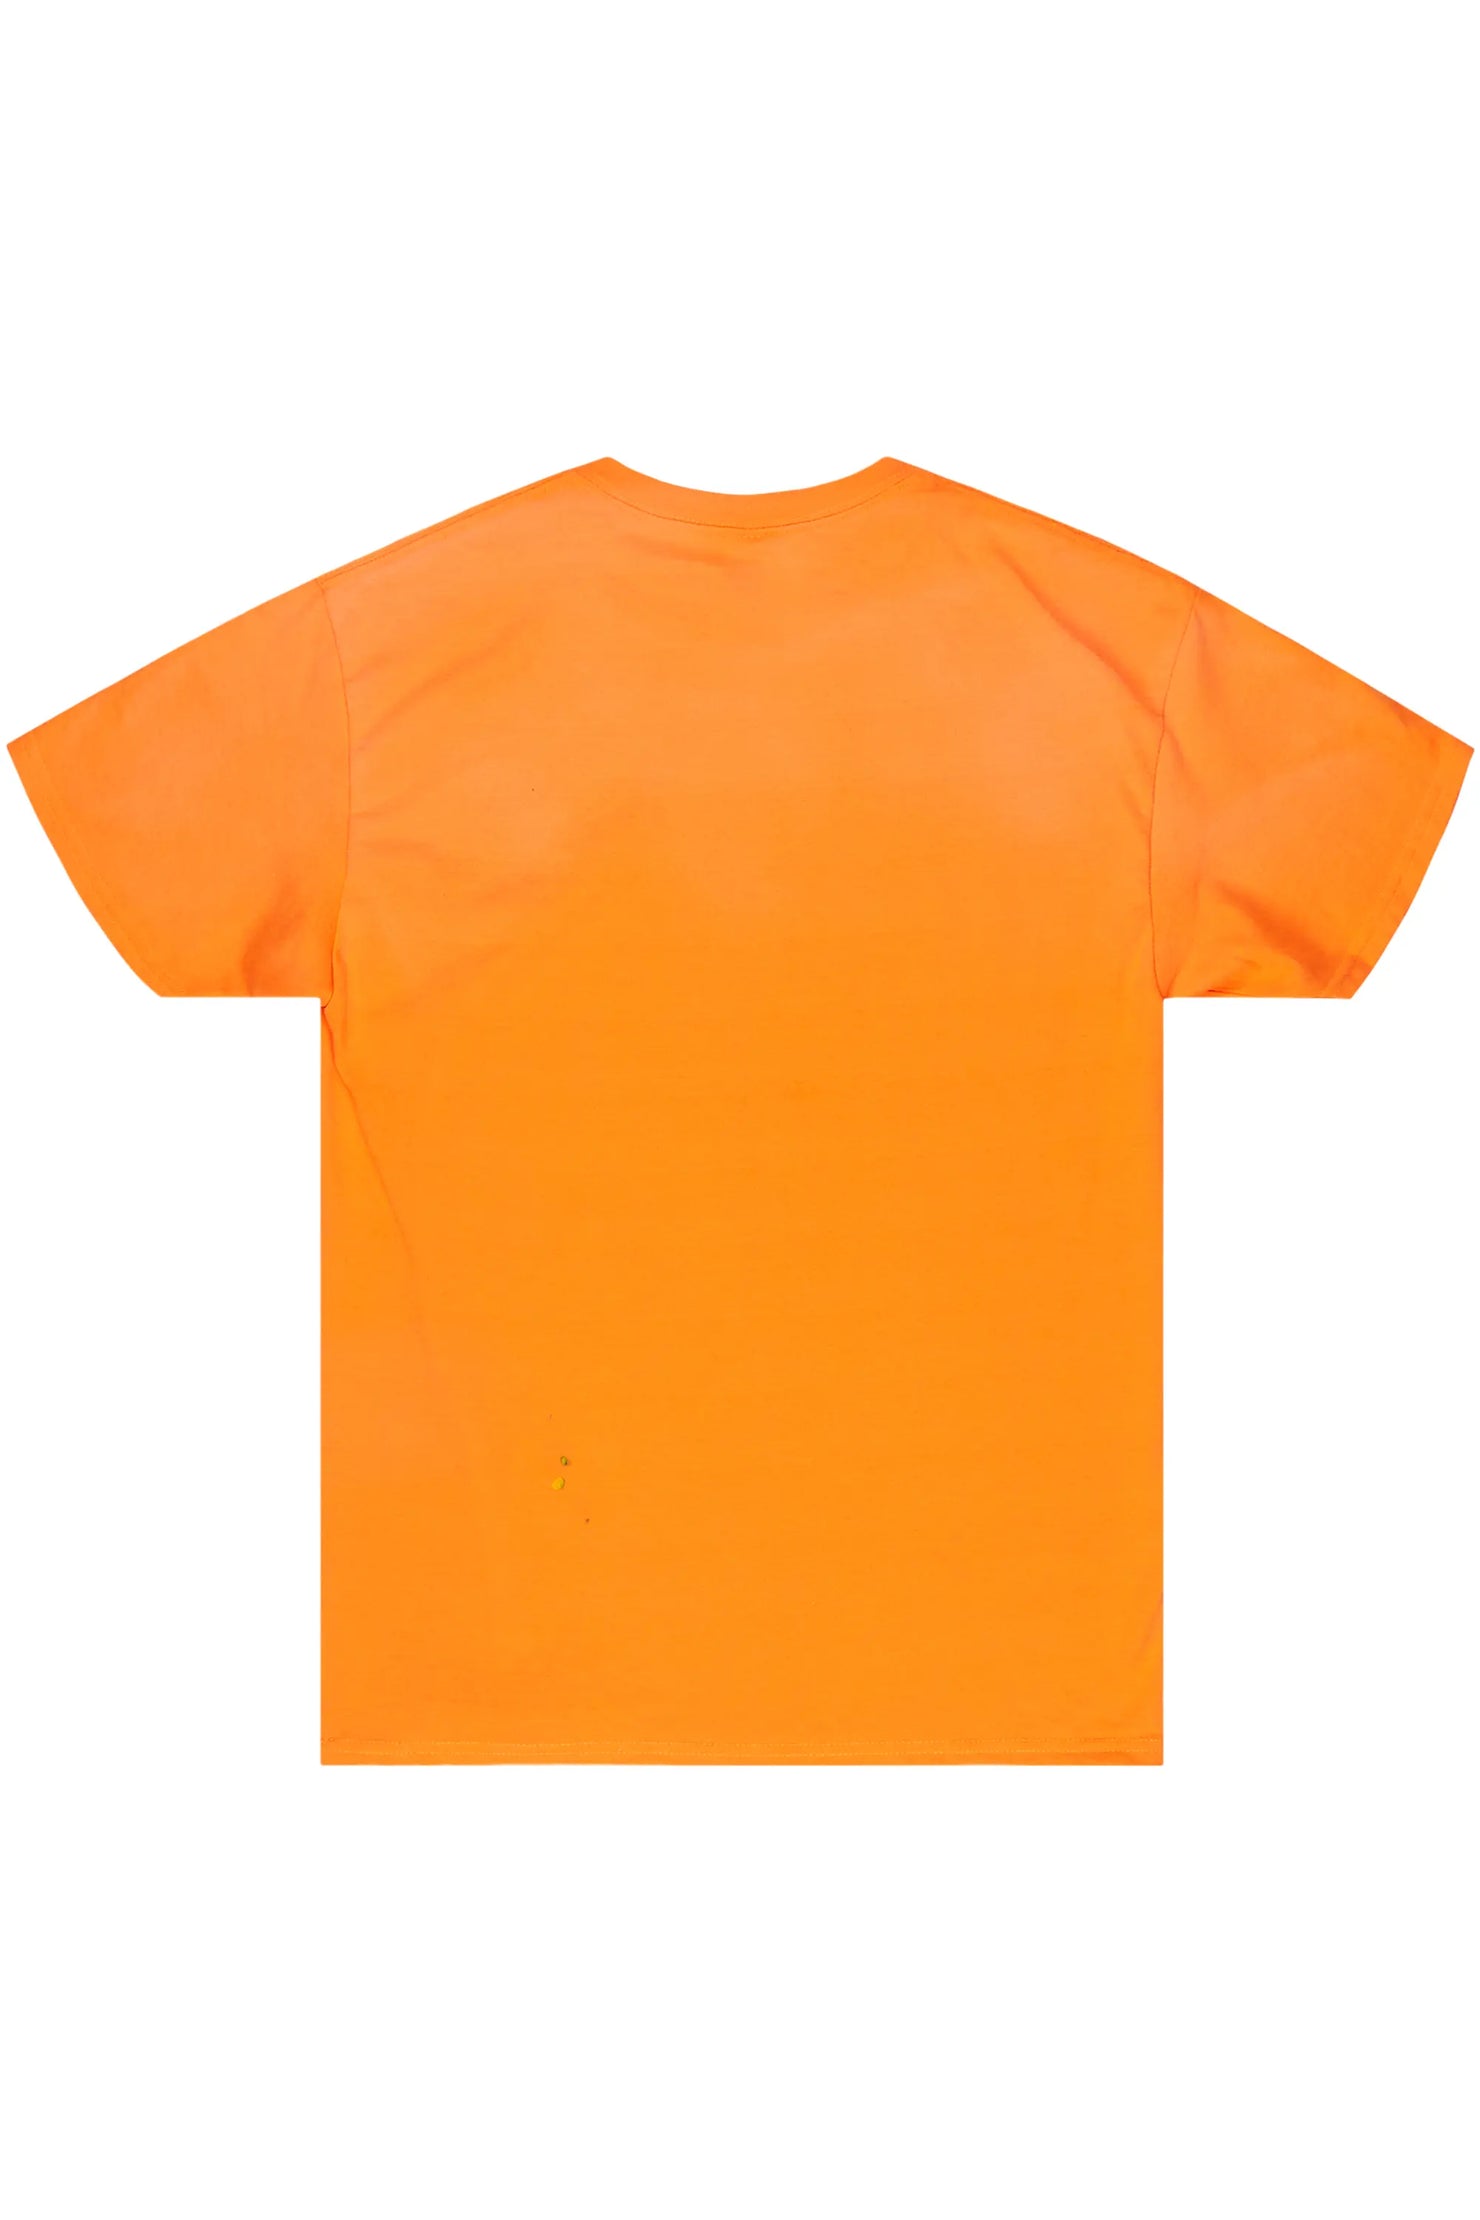 Palmer Orange T-Shirt & Carson Jean Bundle